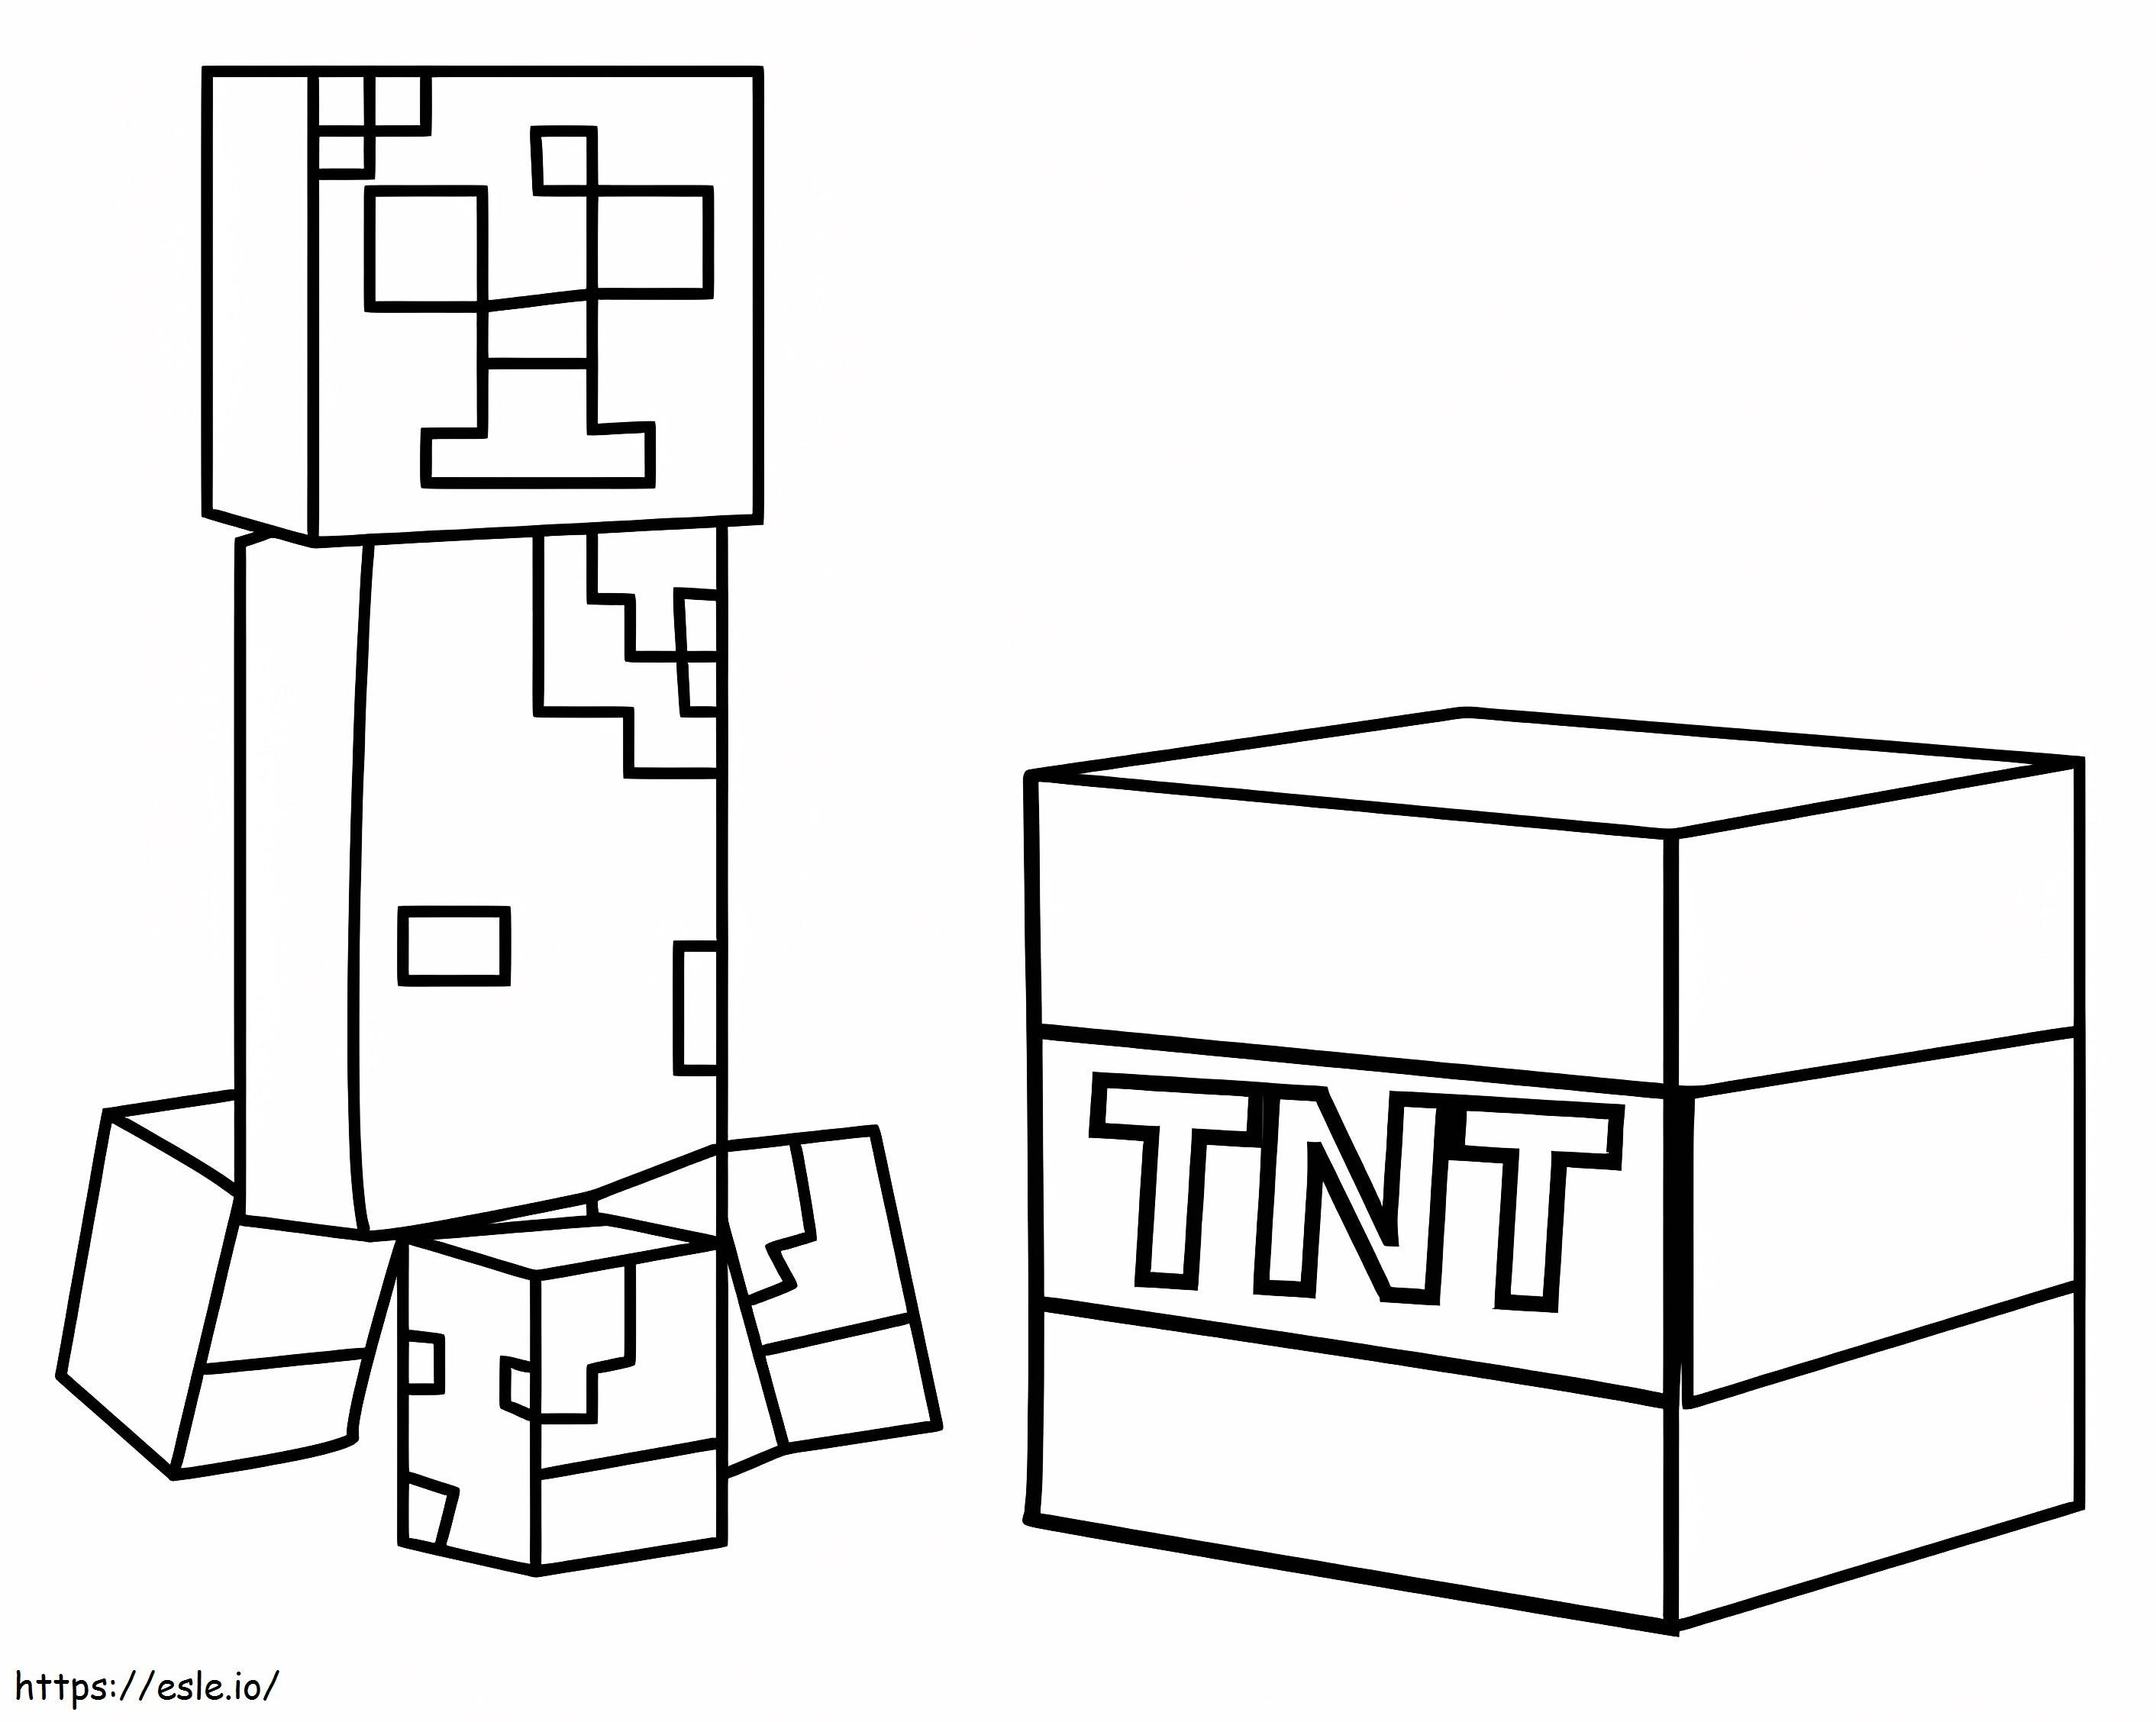 Coloriage Minecraft Creeper avec bloc Tnt à imprimer dessin